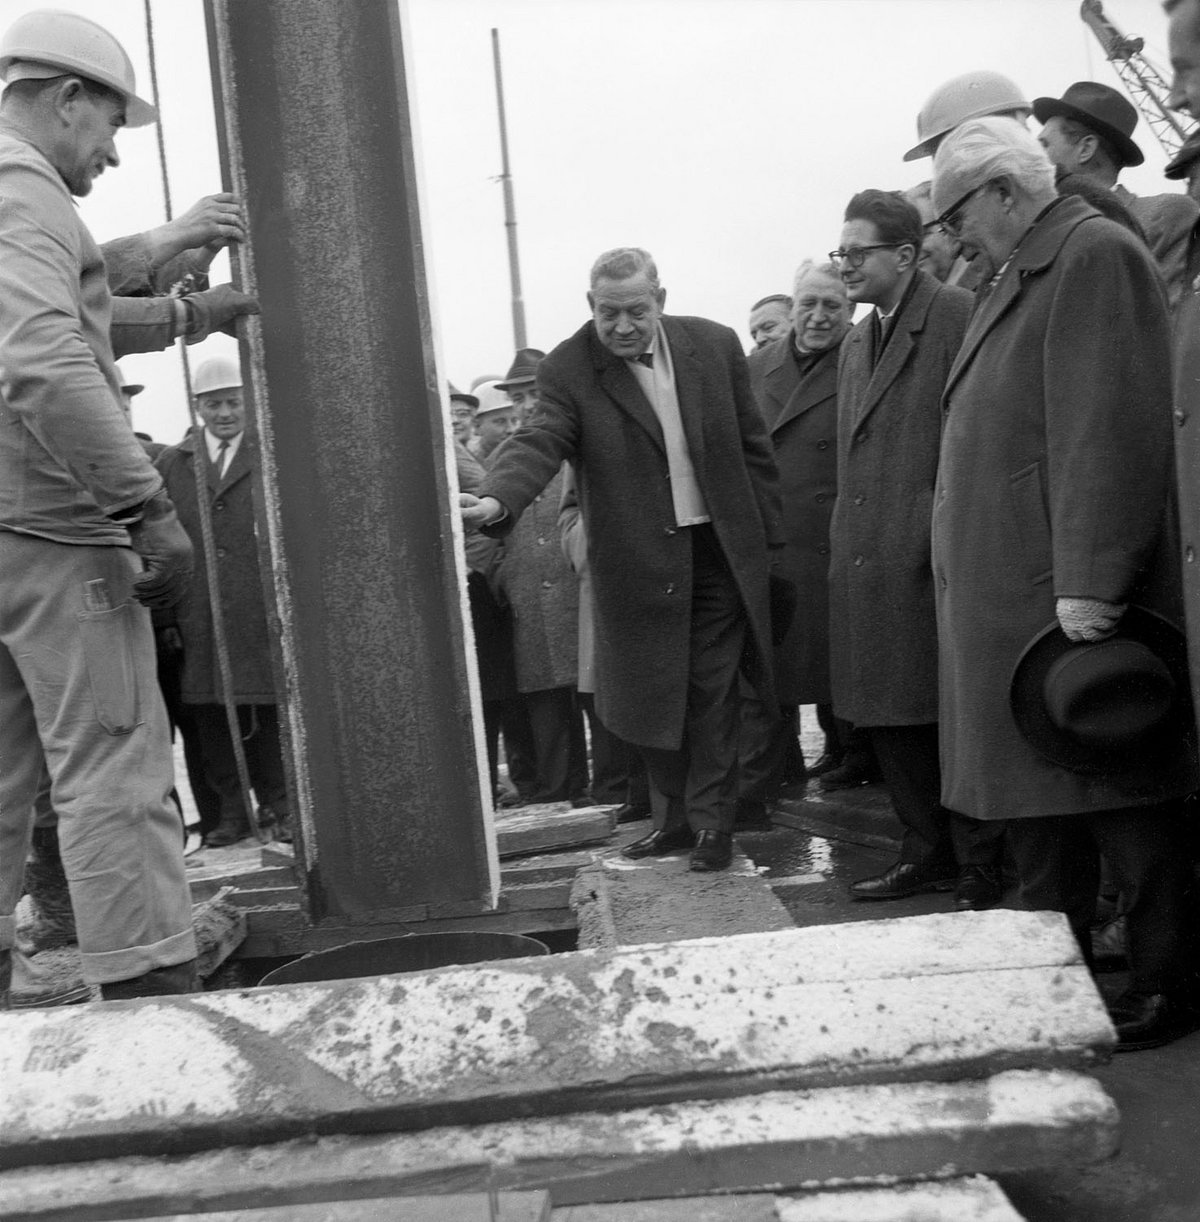 Schwarz-Weiß-Fotografie einer Baustelle und einer Gruppe von Männern.